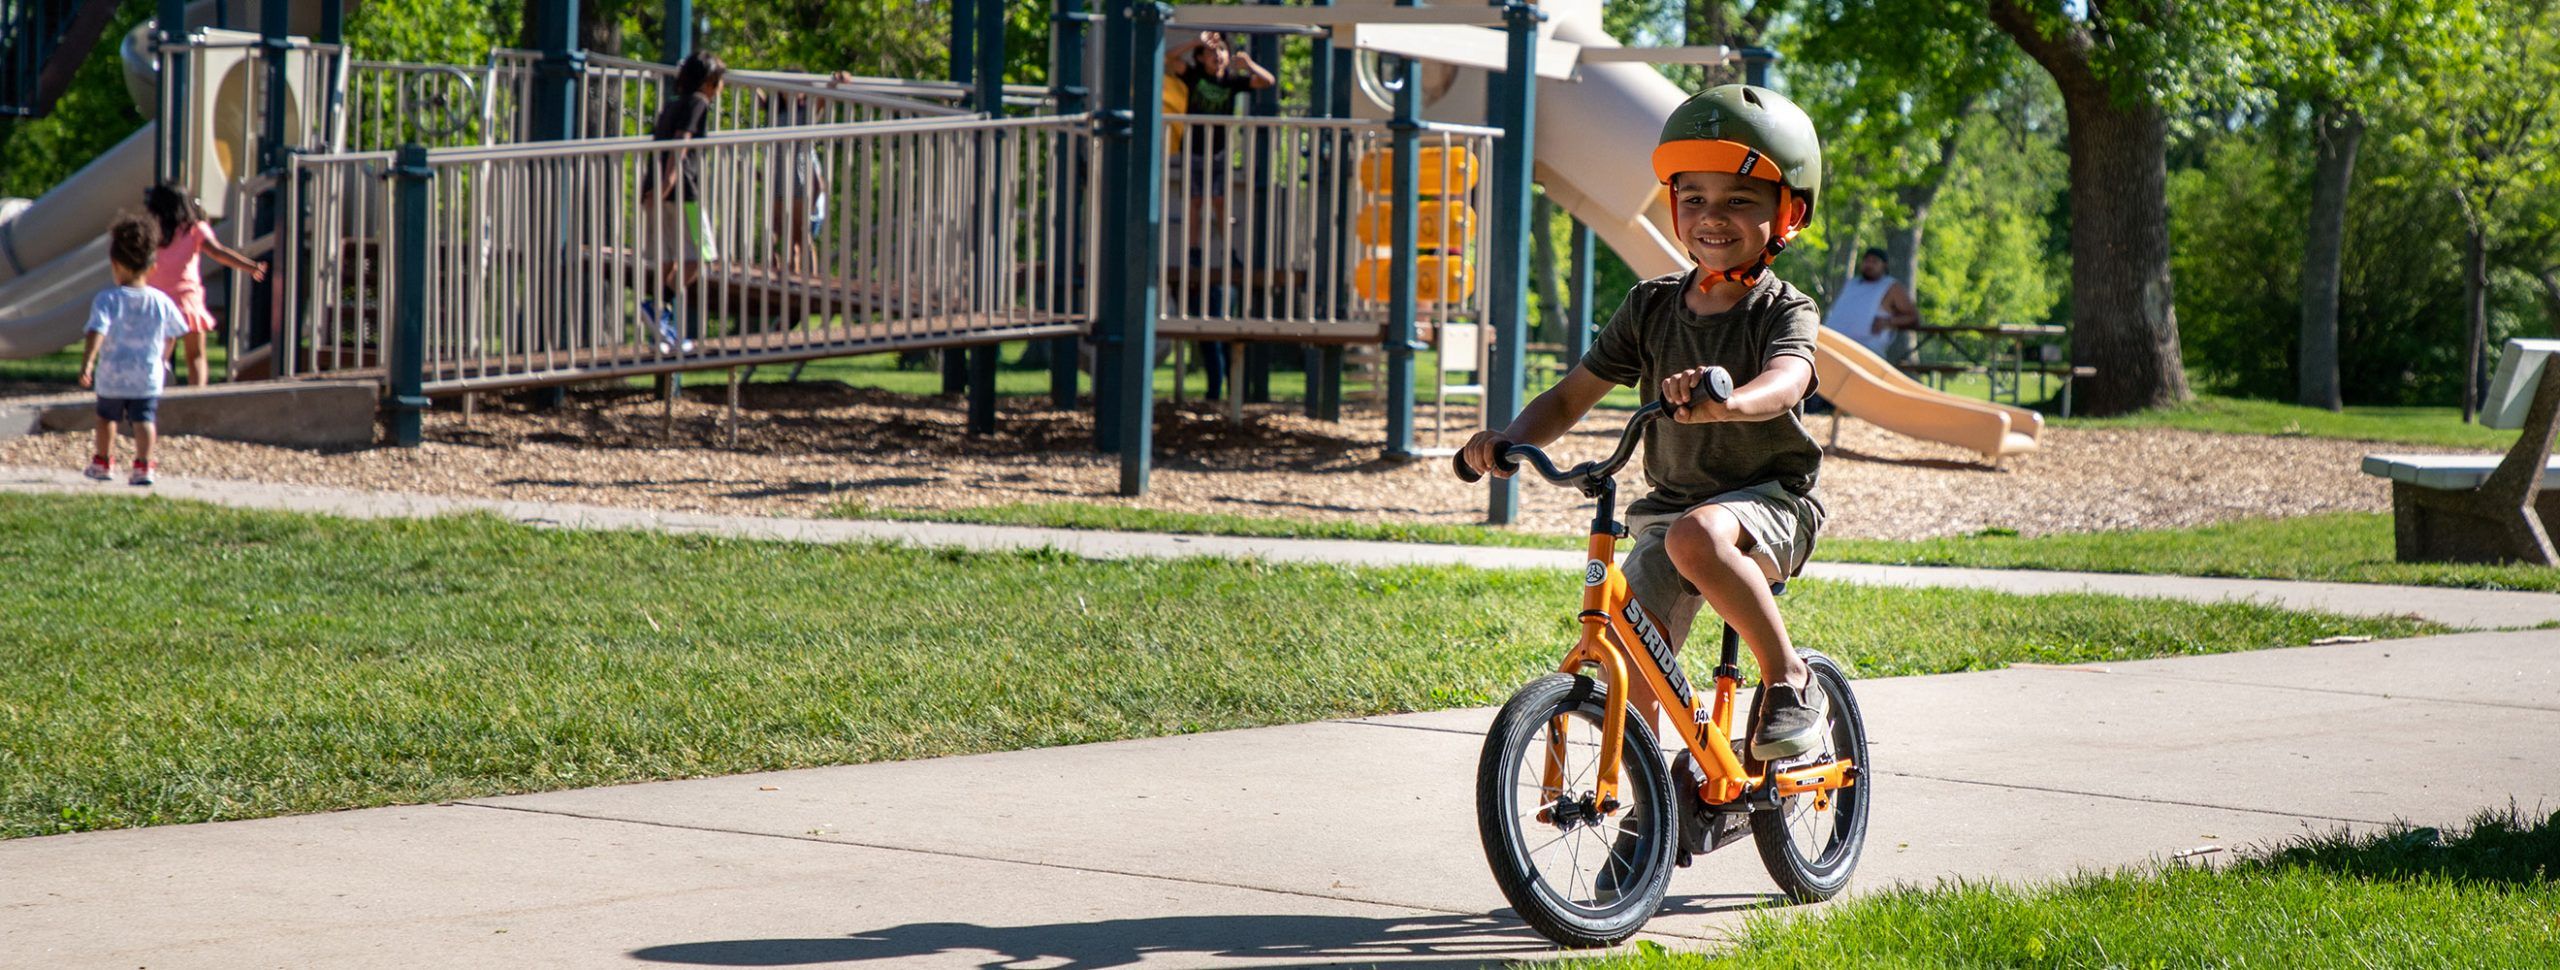 A boy confidently pedals down the sidewalk on his Tangerine Orange Strider 14x Sport bike